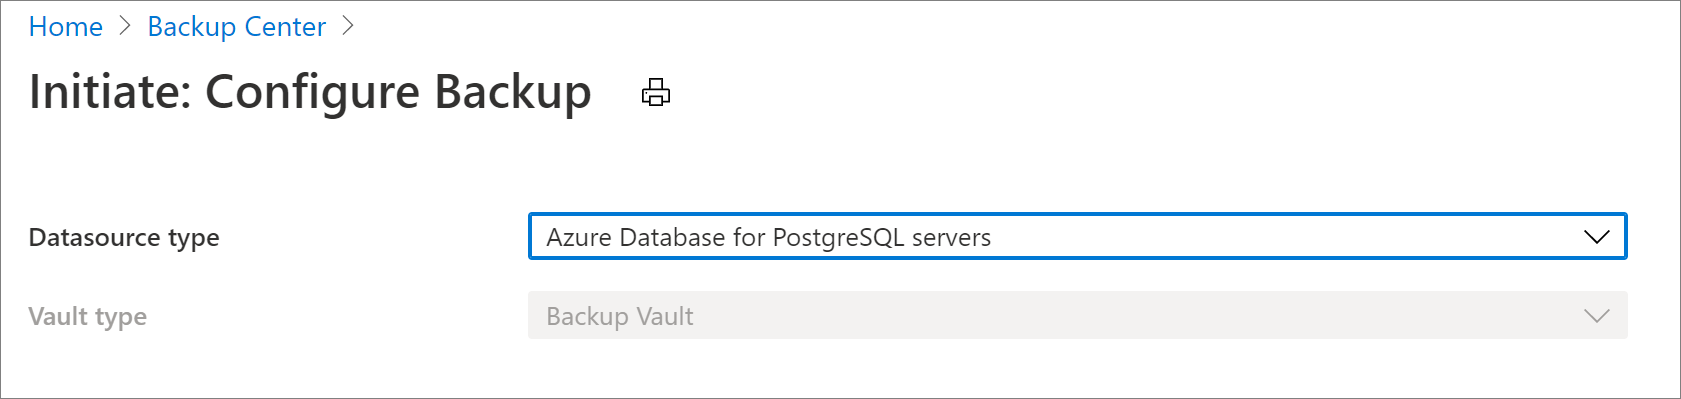 Выбор источника данных для настройки резервного копирования сервера Базы данных Azure для PostgreSQL